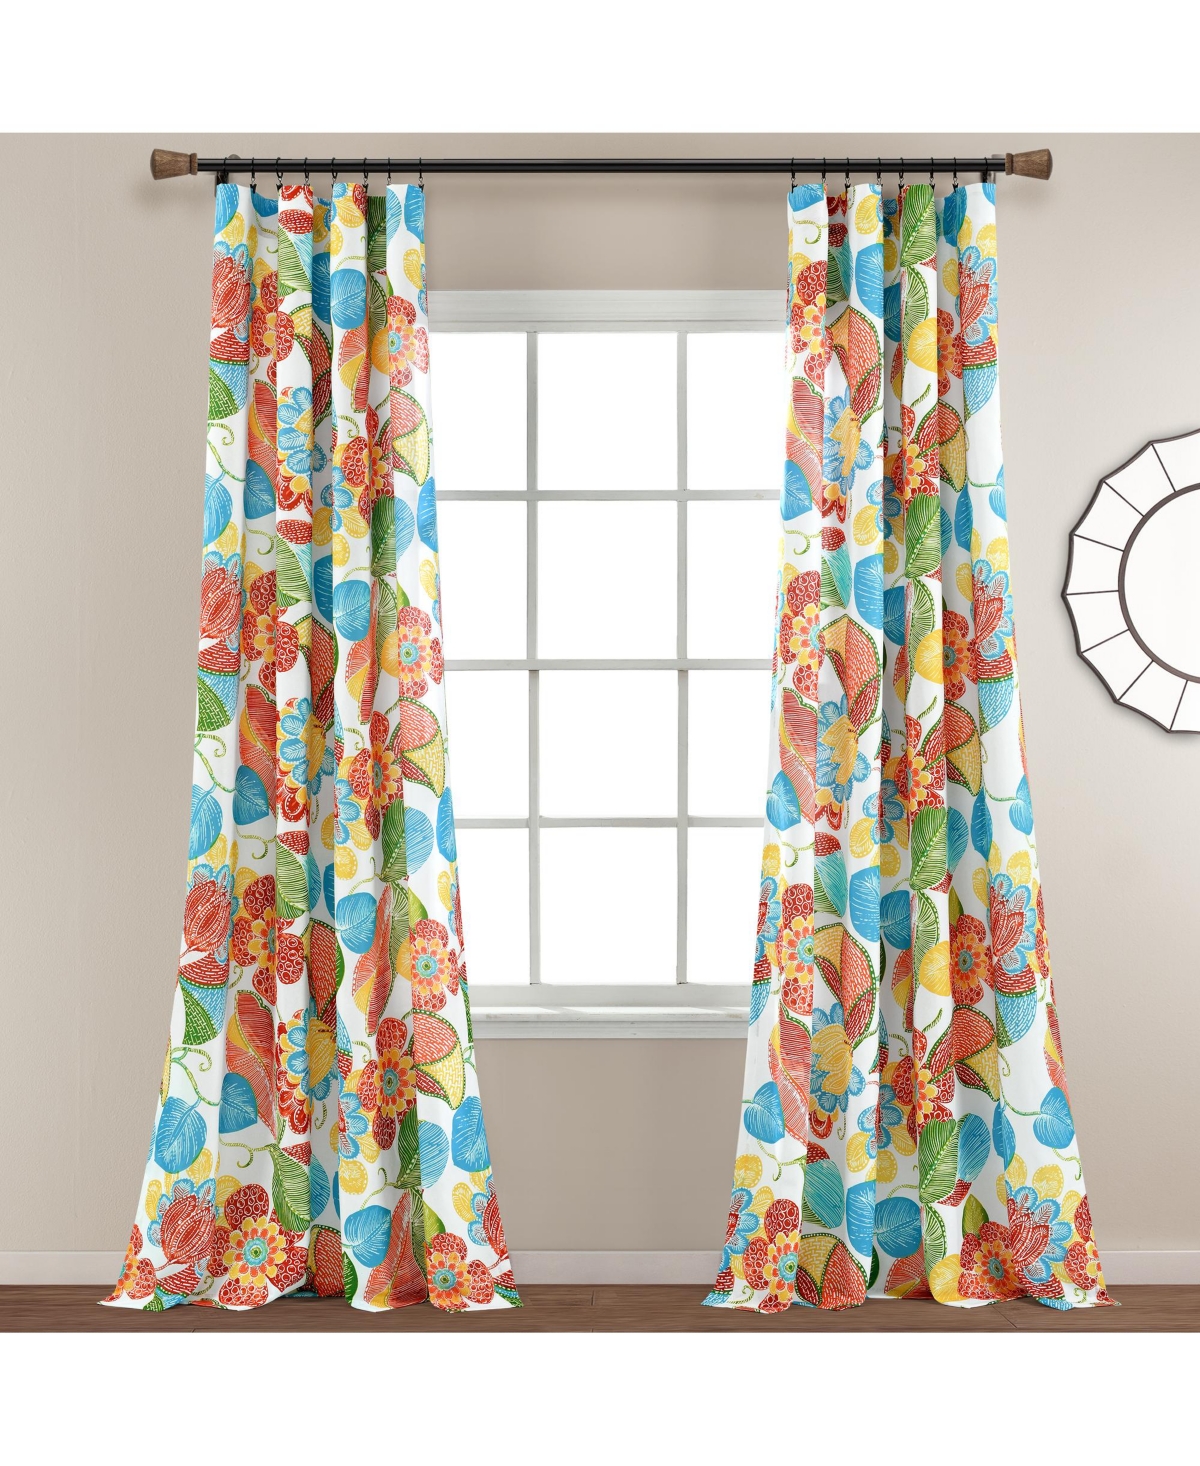 Lush Decor Layla Window Curtain Panels Orange/blue 52x95 Set